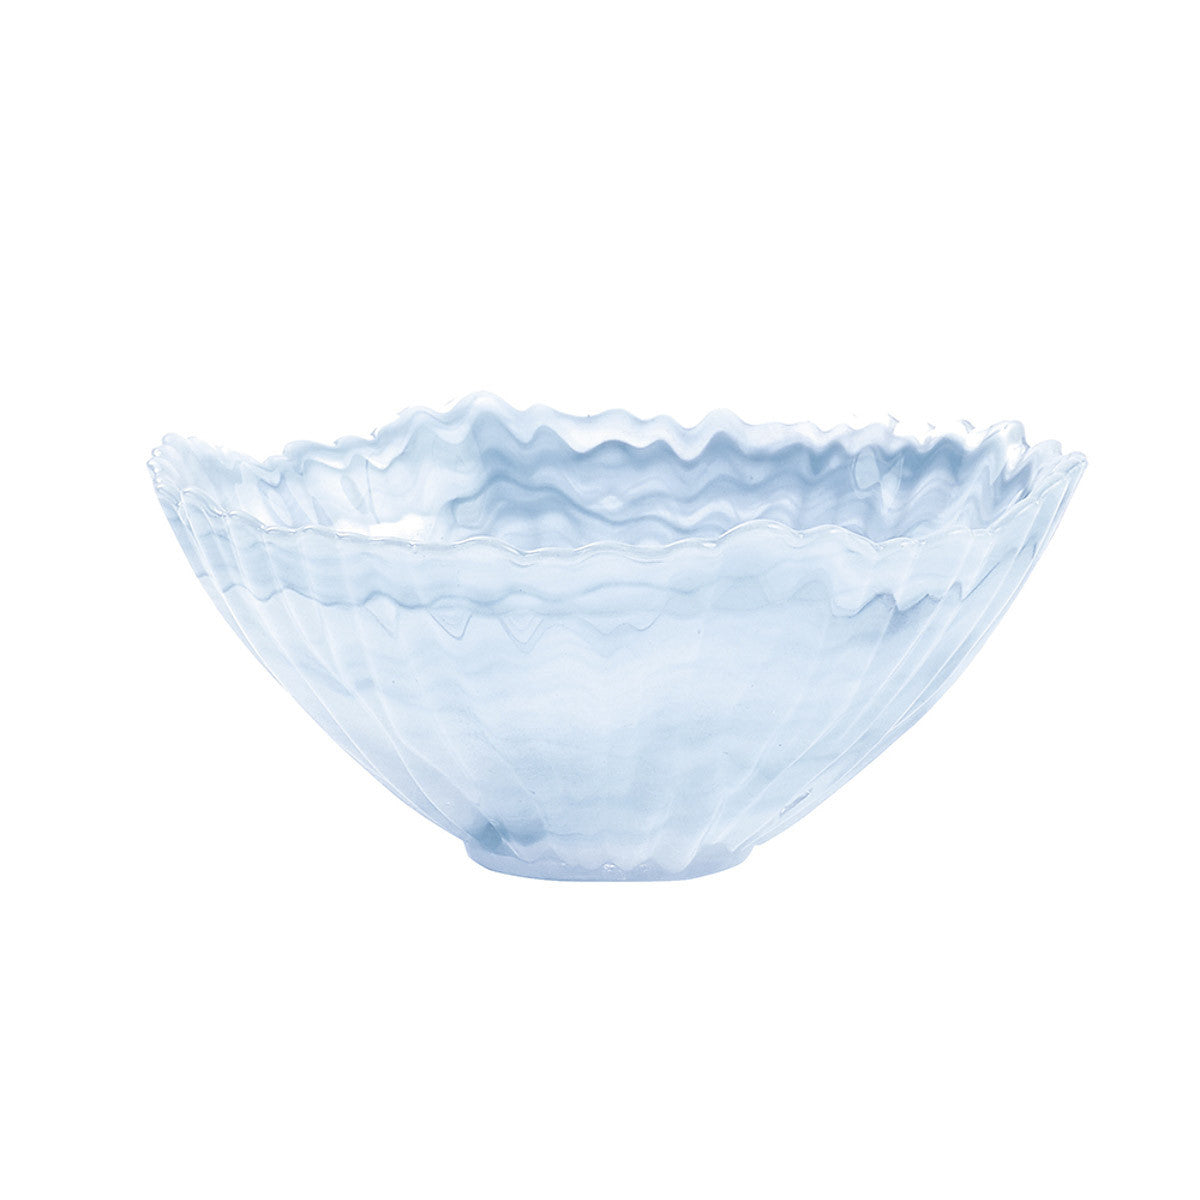 Alabaster Glass Bowl - Mist Set of 4 Park Designs